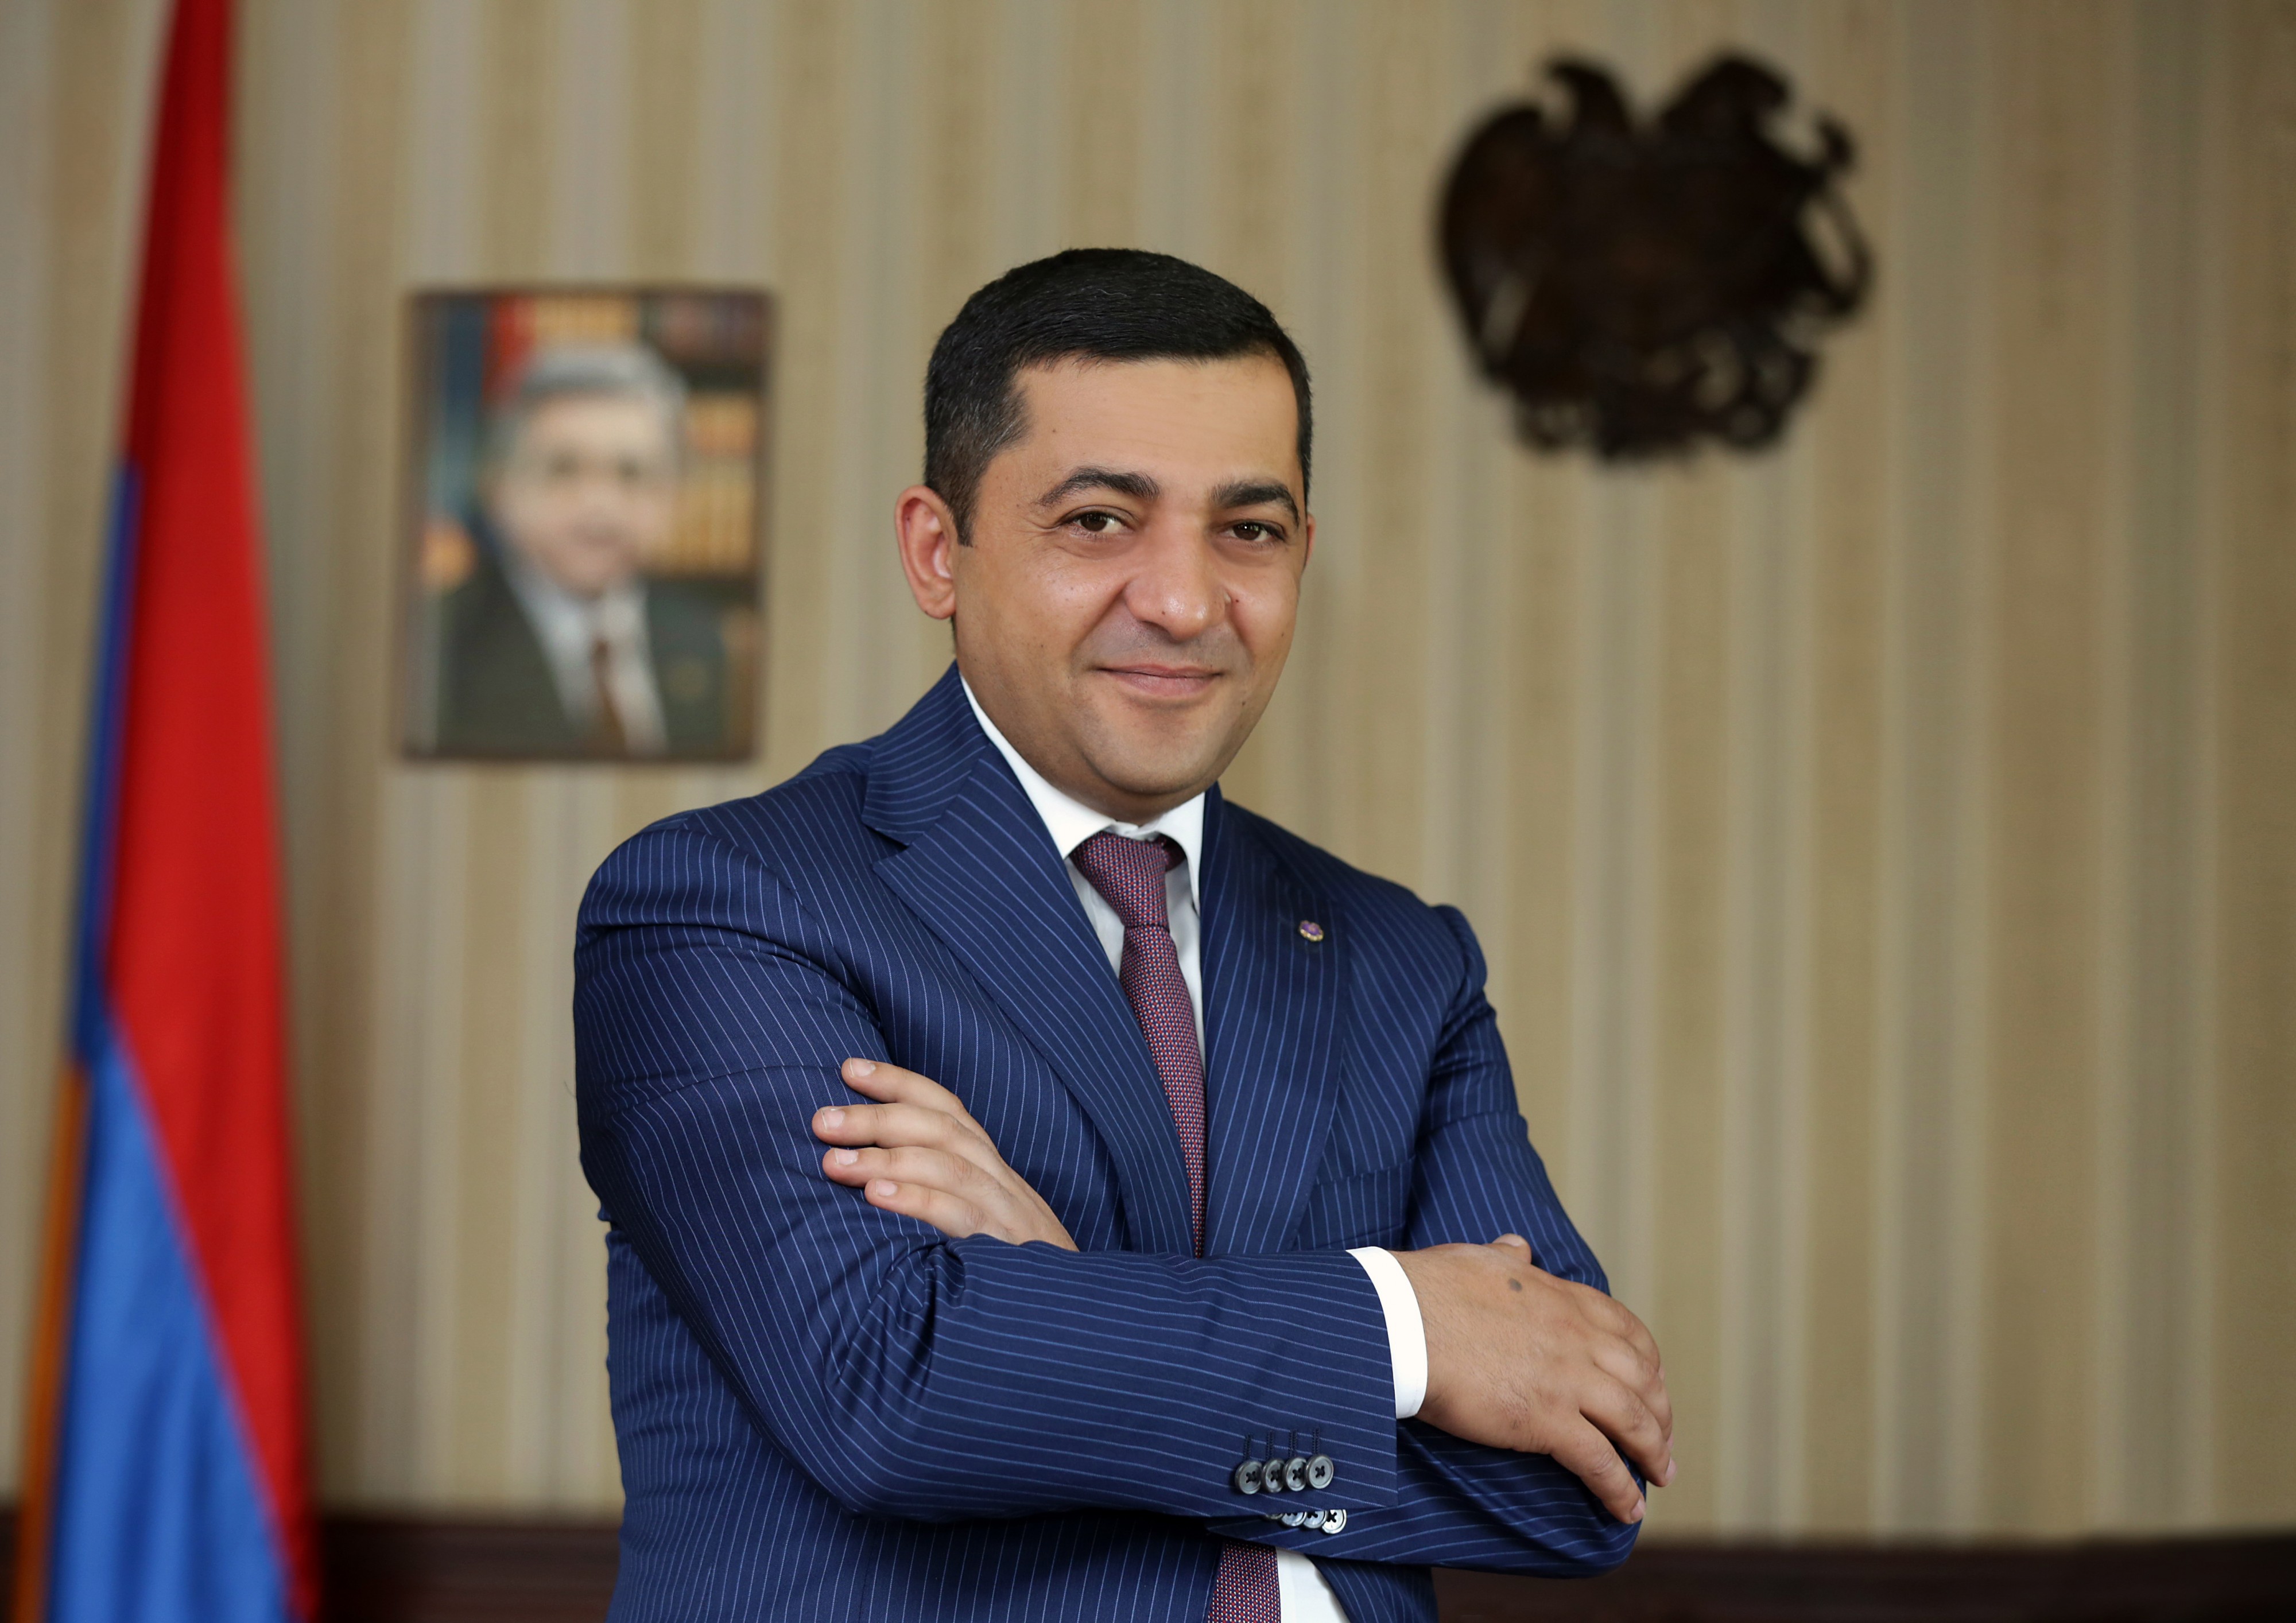 Ruslan Baghdasaryan